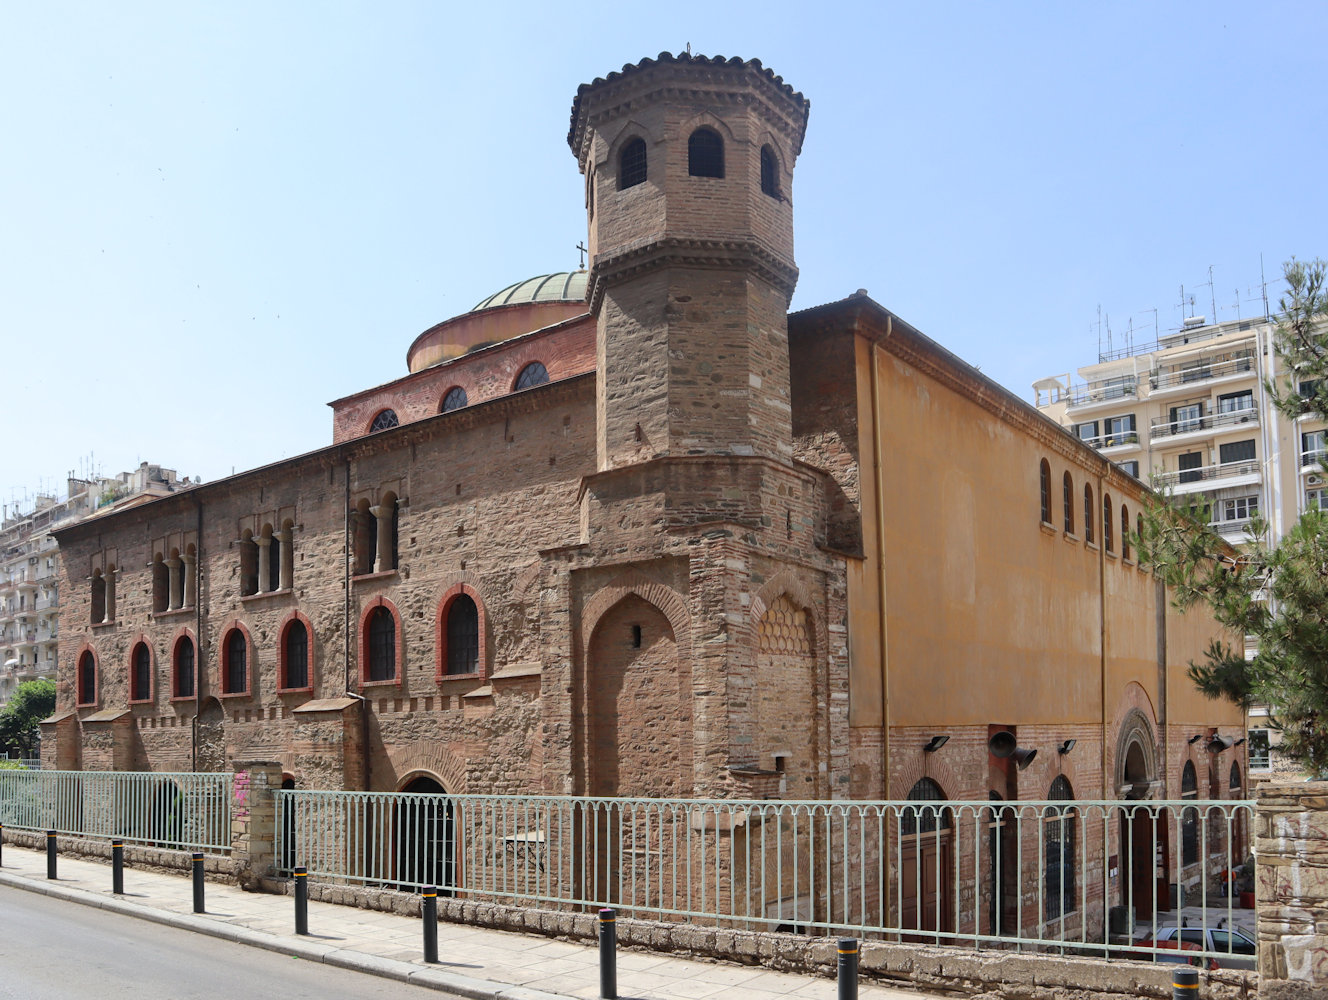 Kirche Hagia Sophia in Thessaloniki, errichtet auf einem Ursprungsbau von 315, 1204 - nach der Besetzung der Stadt durch die Ritter des 4. Kreuzzuges katholische Kathedrale, 1246 wieder orthodox und Metropolitankirche, 1590 Moschee (vorne die Reste des Minaretts), 1890 abgebrannt, seit 1913 wieder orthodoxe Kirche